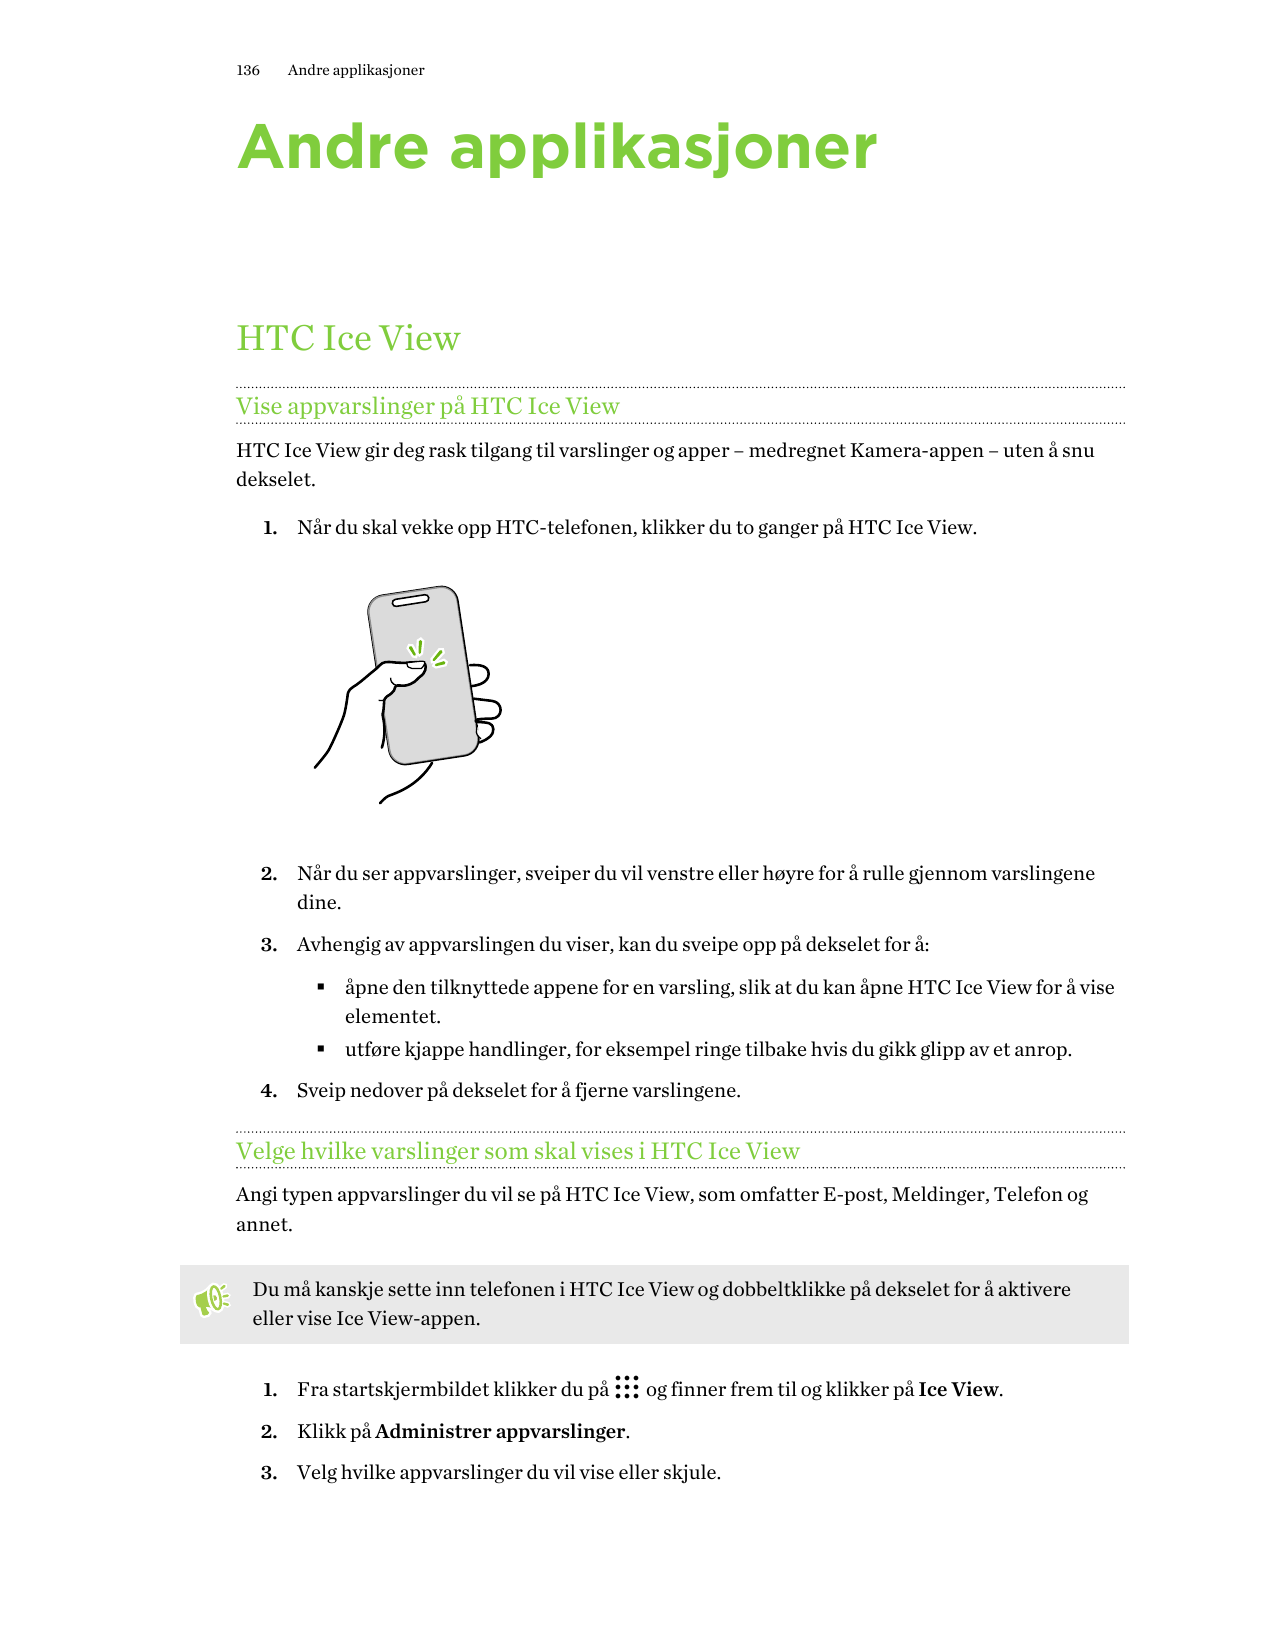 136Andre applikasjonerAndre applikasjonerHTC Ice ViewVise appvarslinger på HTC Ice ViewHTC Ice View gir deg rask tilgang til var